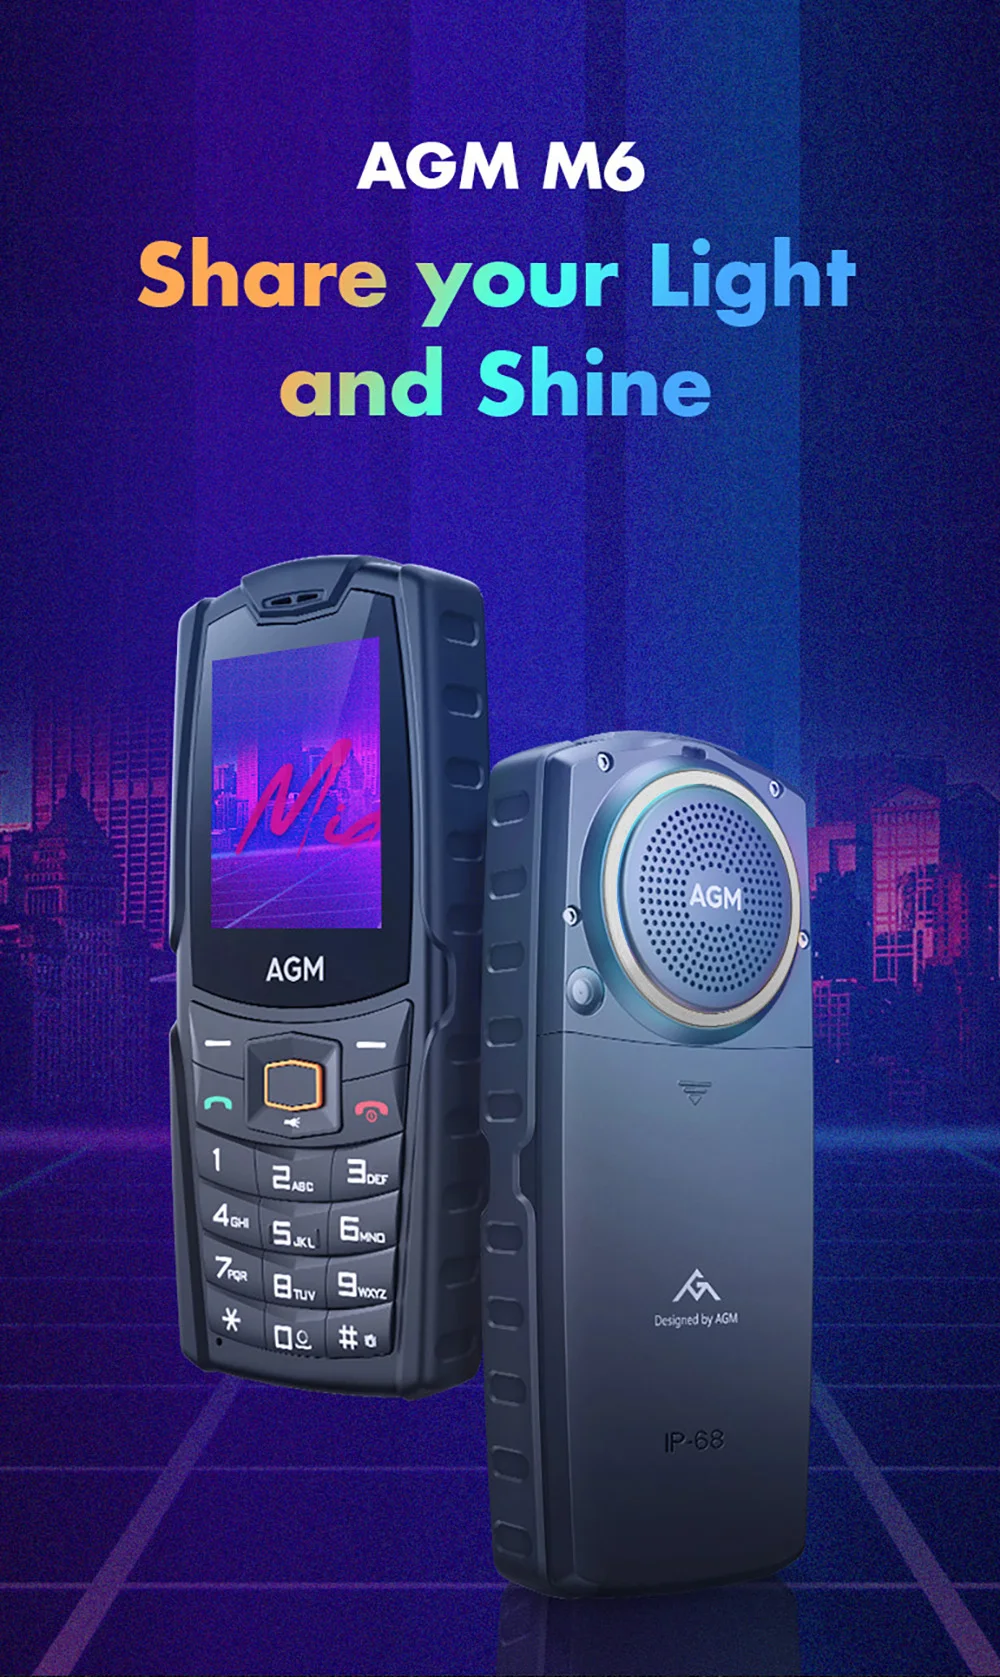 AGM M6 4G Rugged Phone, Cell Phone for Seniors & Kids, Dual SIM IP68/IP69K  Waterproof Phone, MIL-STD-810H, T-Mobile, 2.4 Screen, 48+128MB, 2500mAh